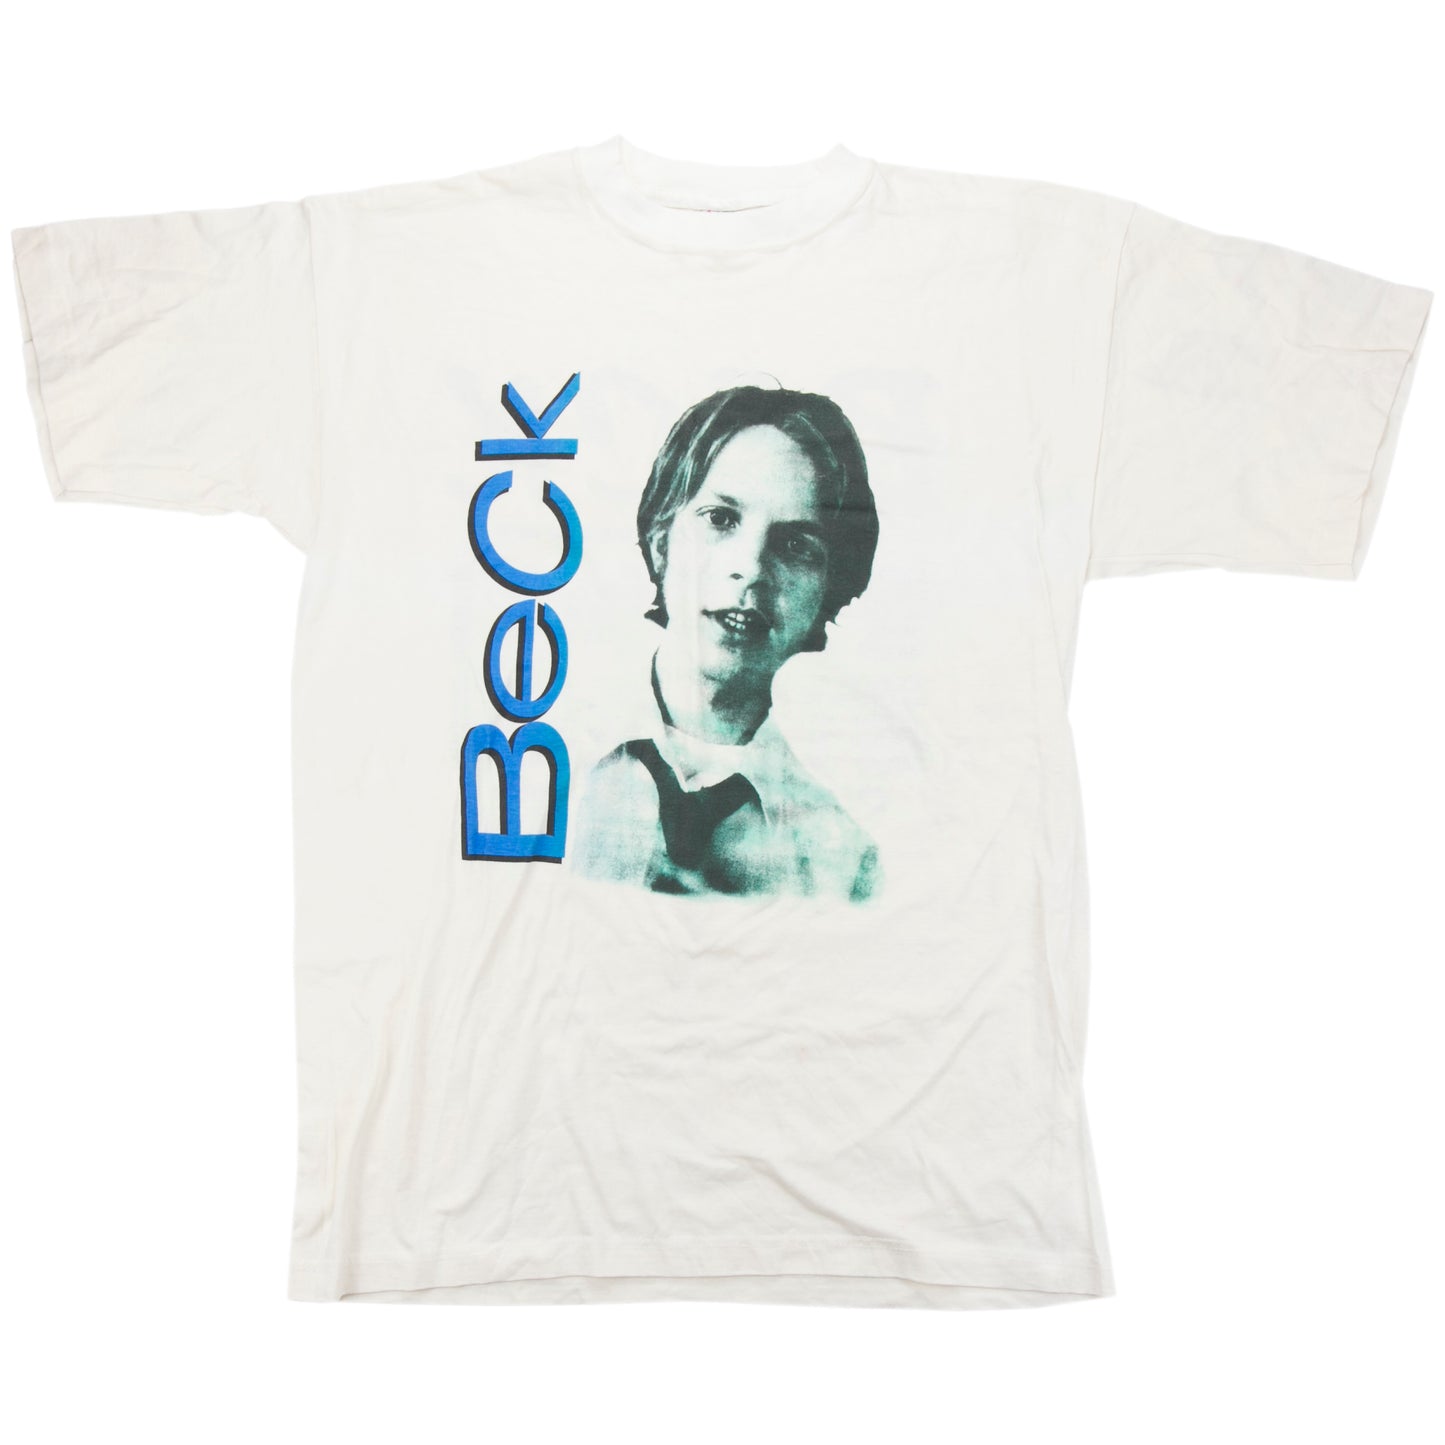 Beck - OS/TU